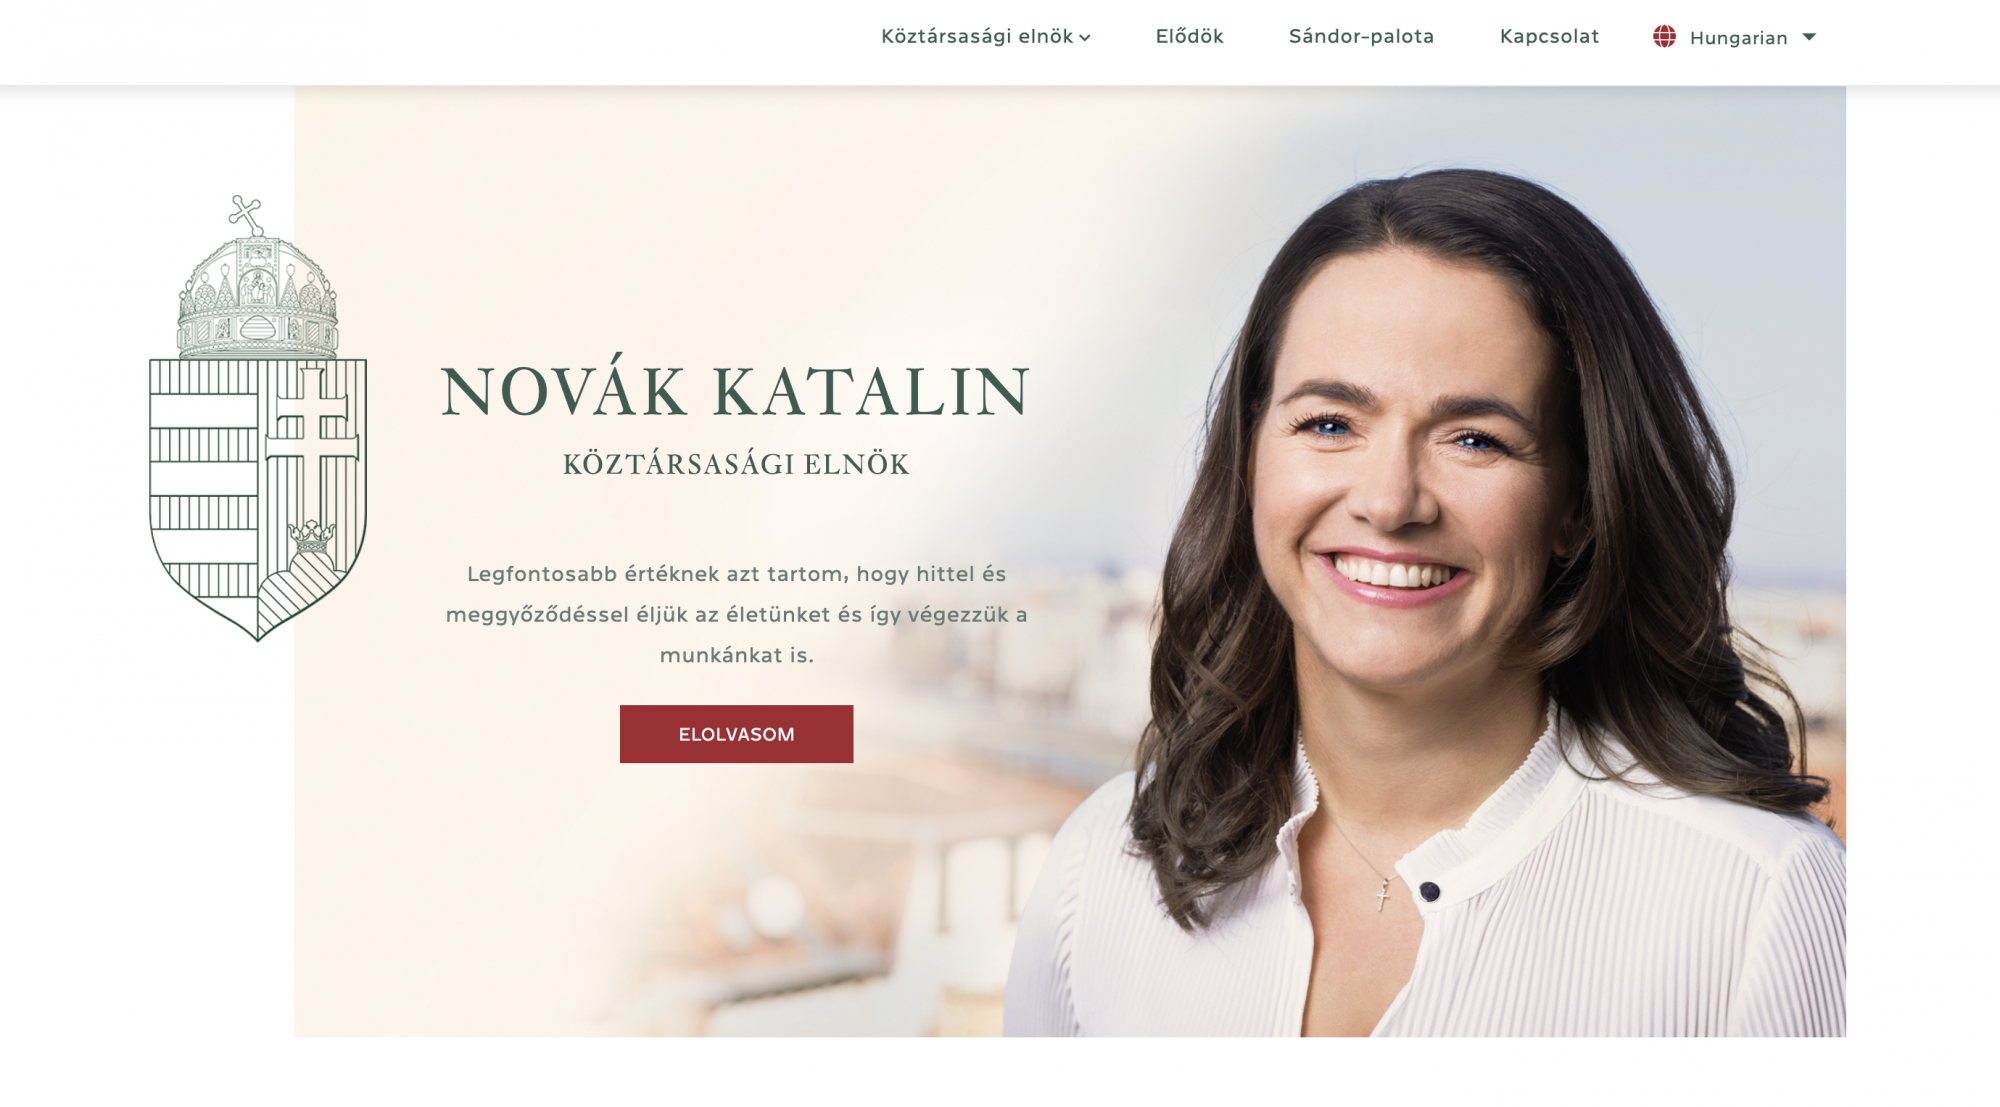 Hivatalba lépett Sulyok Tamás, de a hivatalos honlap szerint még mindig Novák Katalin a köztársasági elnök